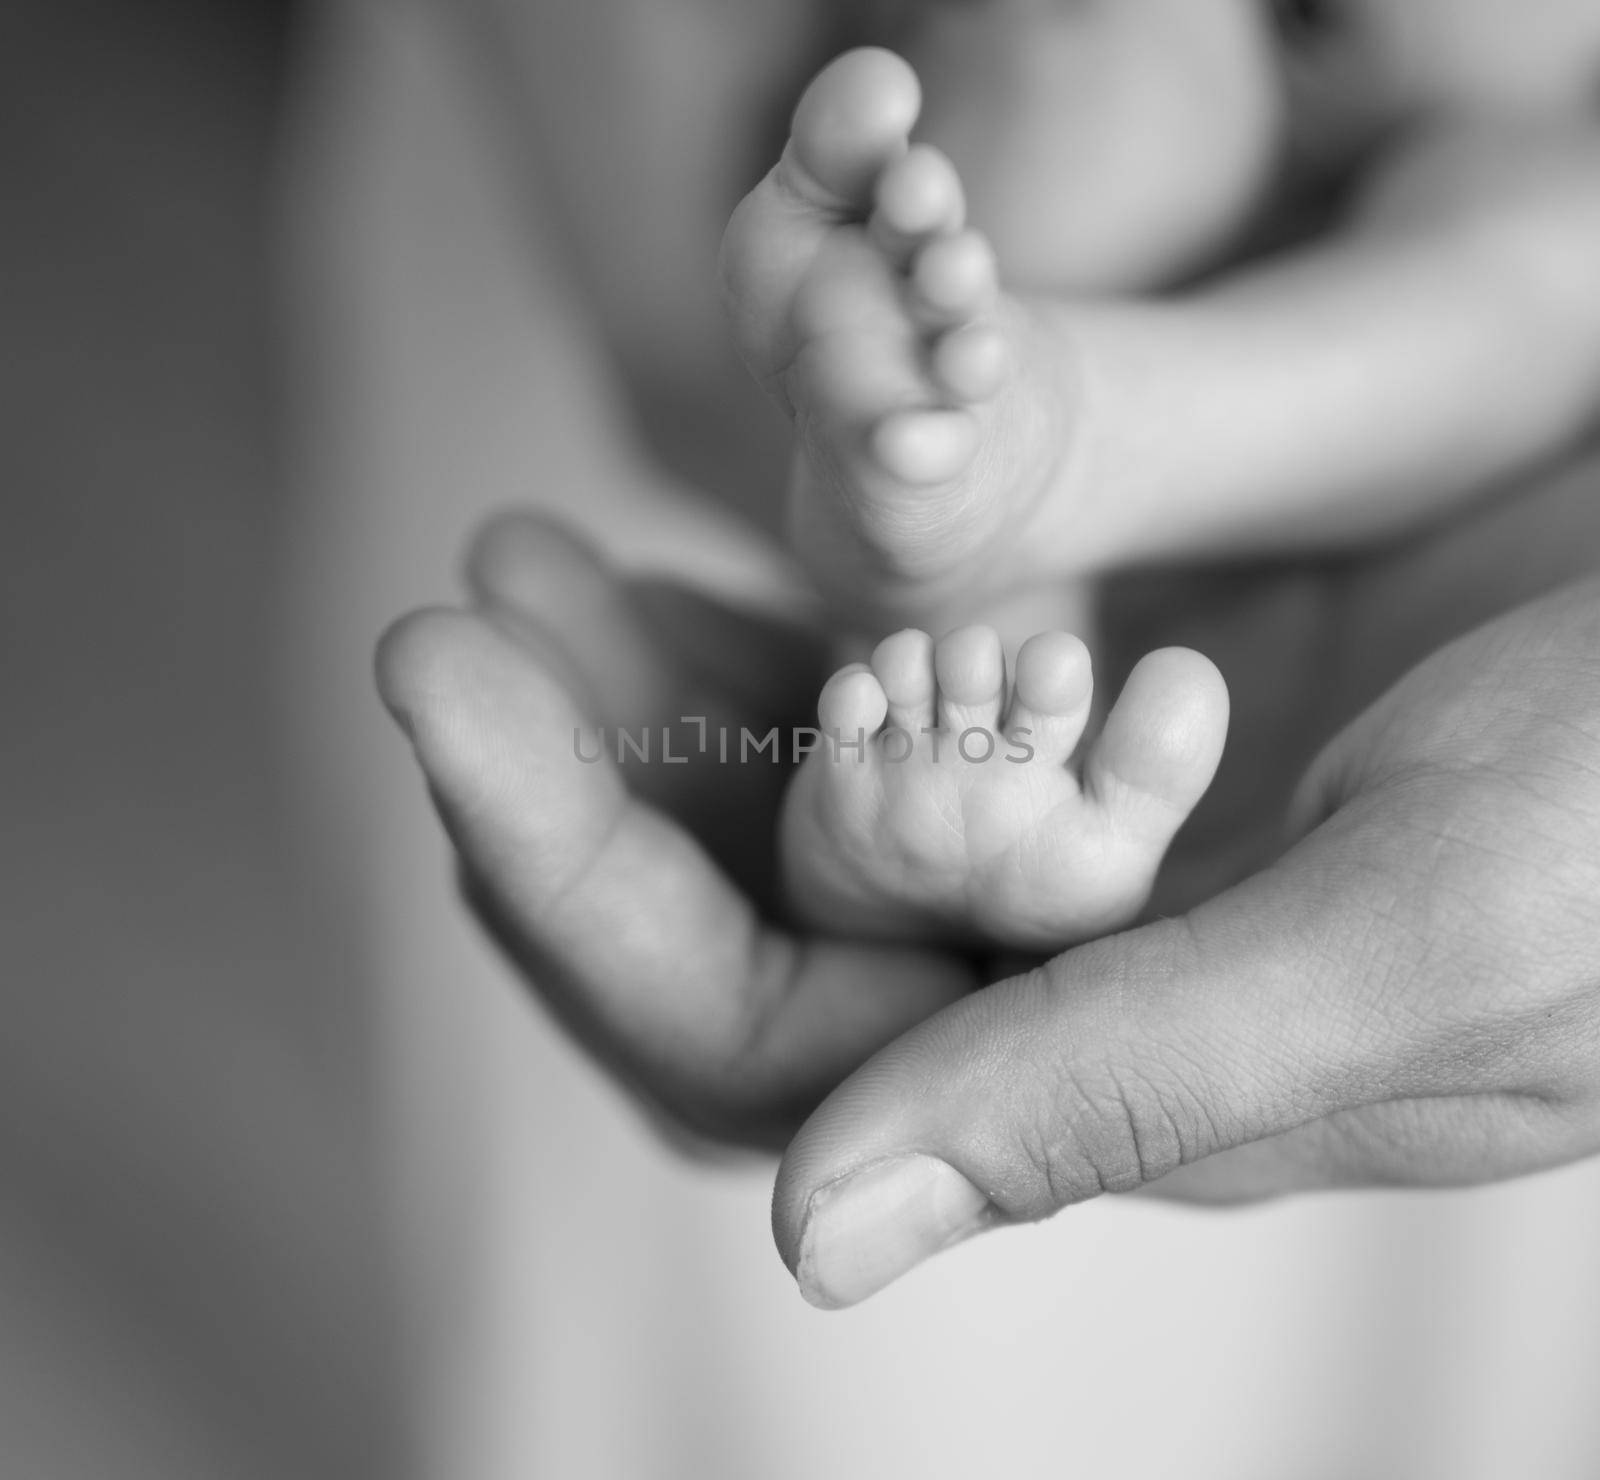 tiny newborn feet in human palm by tan4ikk1